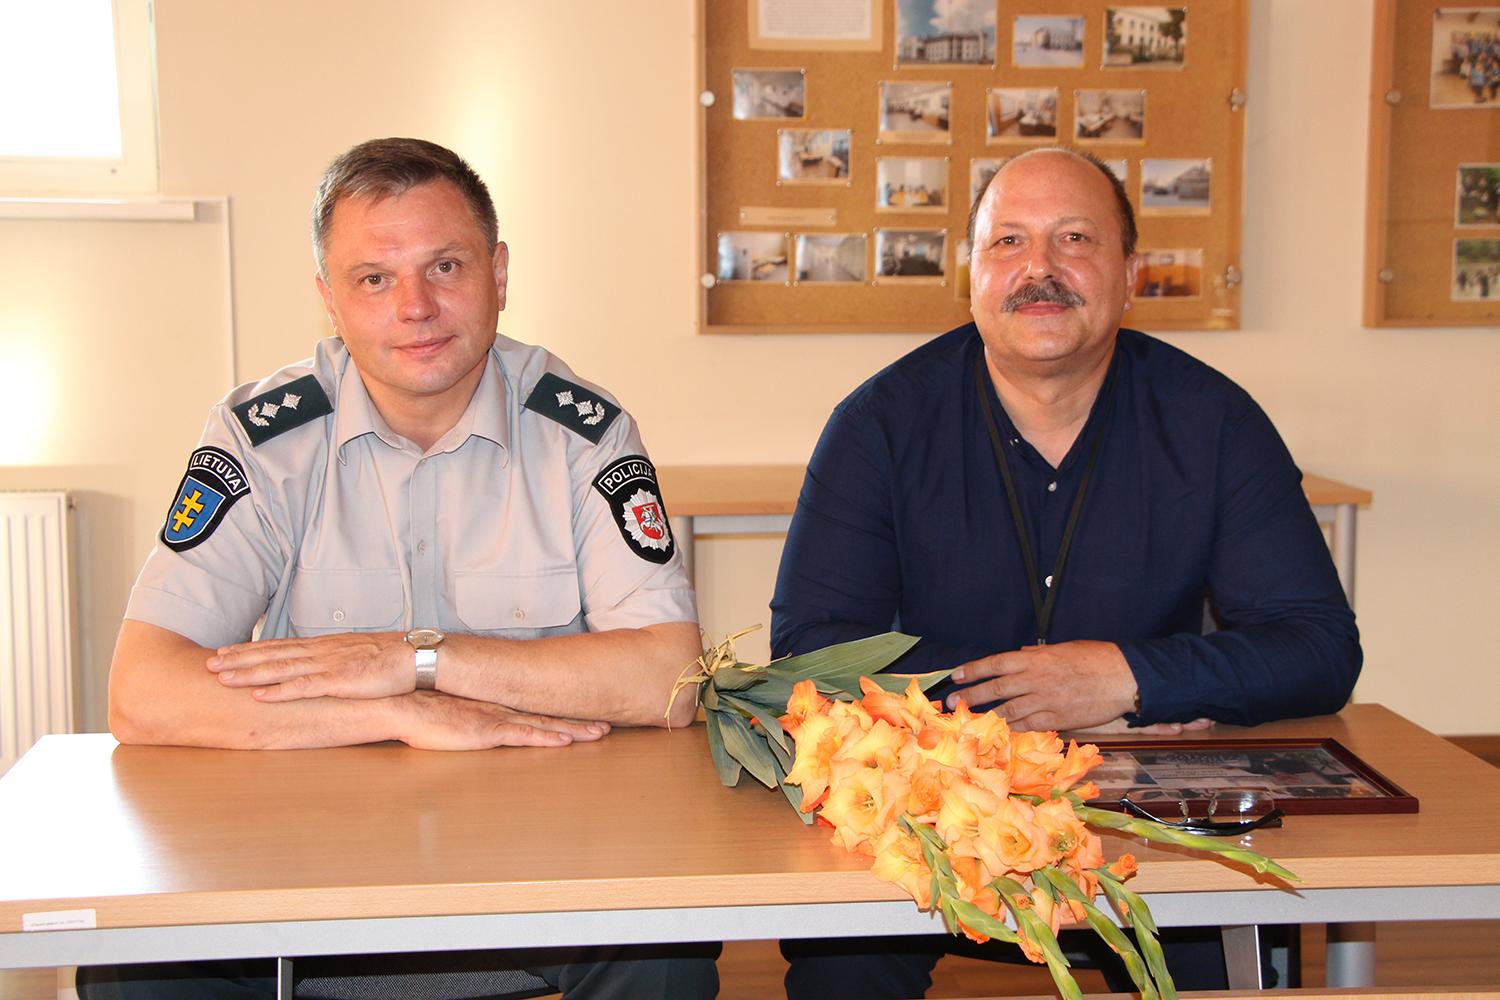 Darbo policijoje etapas pabaigtas / Policijos komisariato viršininkas Saulius Kazlauskas (kairėje) už darbą dėkojo tarnybą policijoje baigusiam Audriui Petuškai.